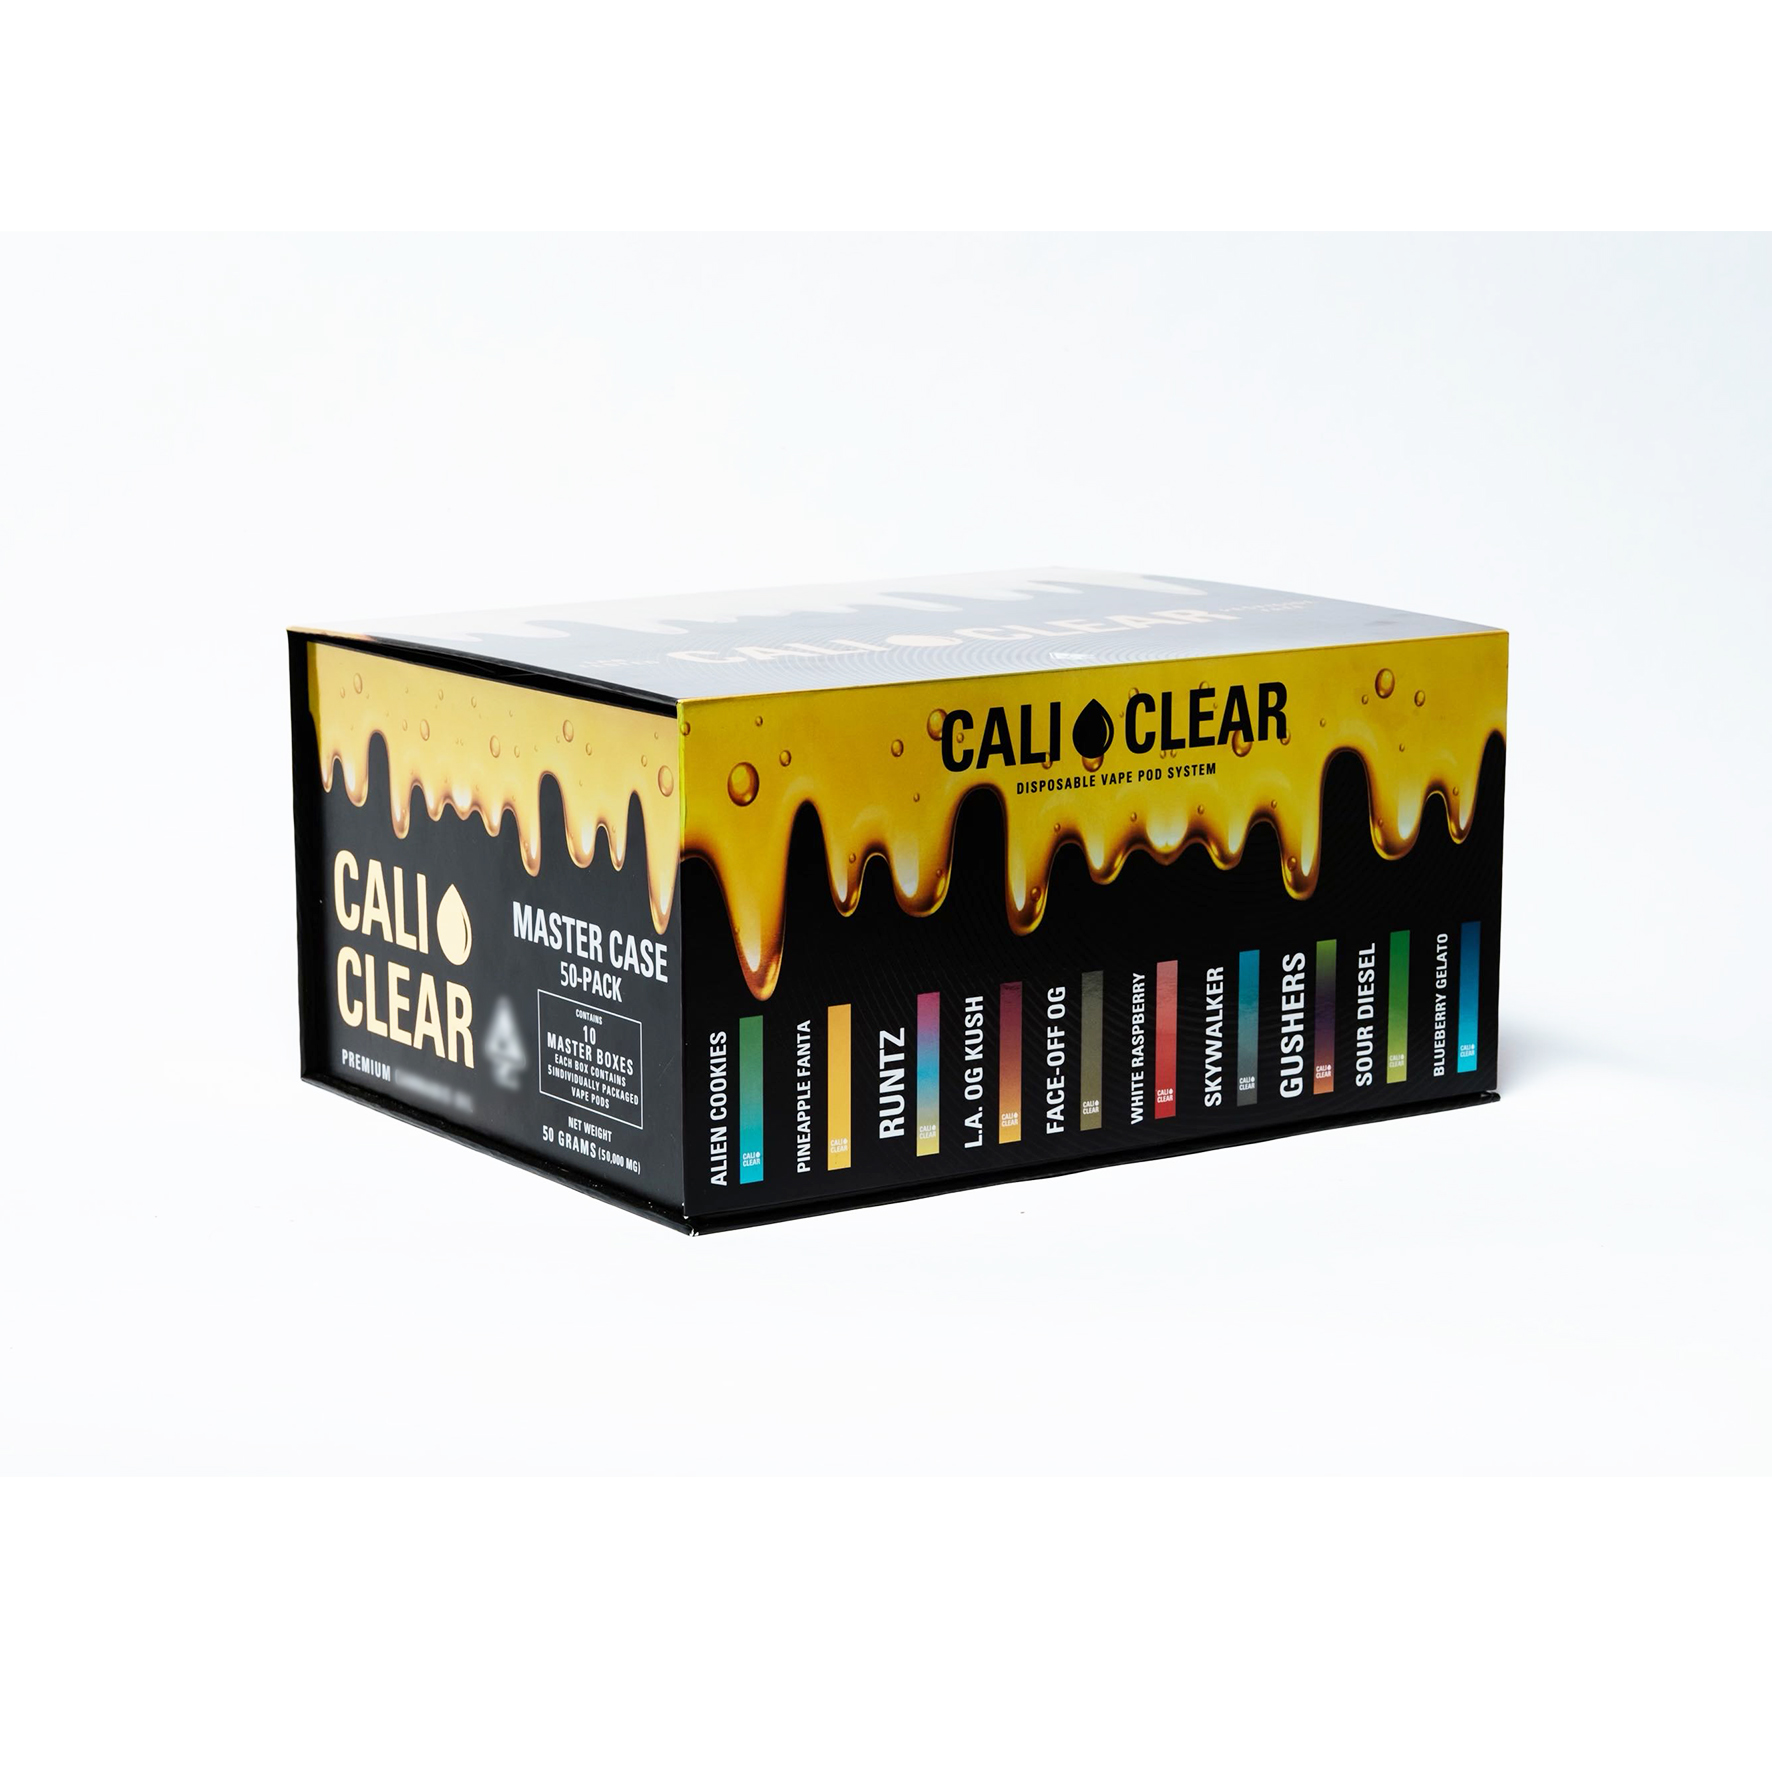 Cali predefinite Cali chiari-sigarette monouso Penna vape una pacchetto 10 gusti ricaricabili da 1 ml carrelli in USA